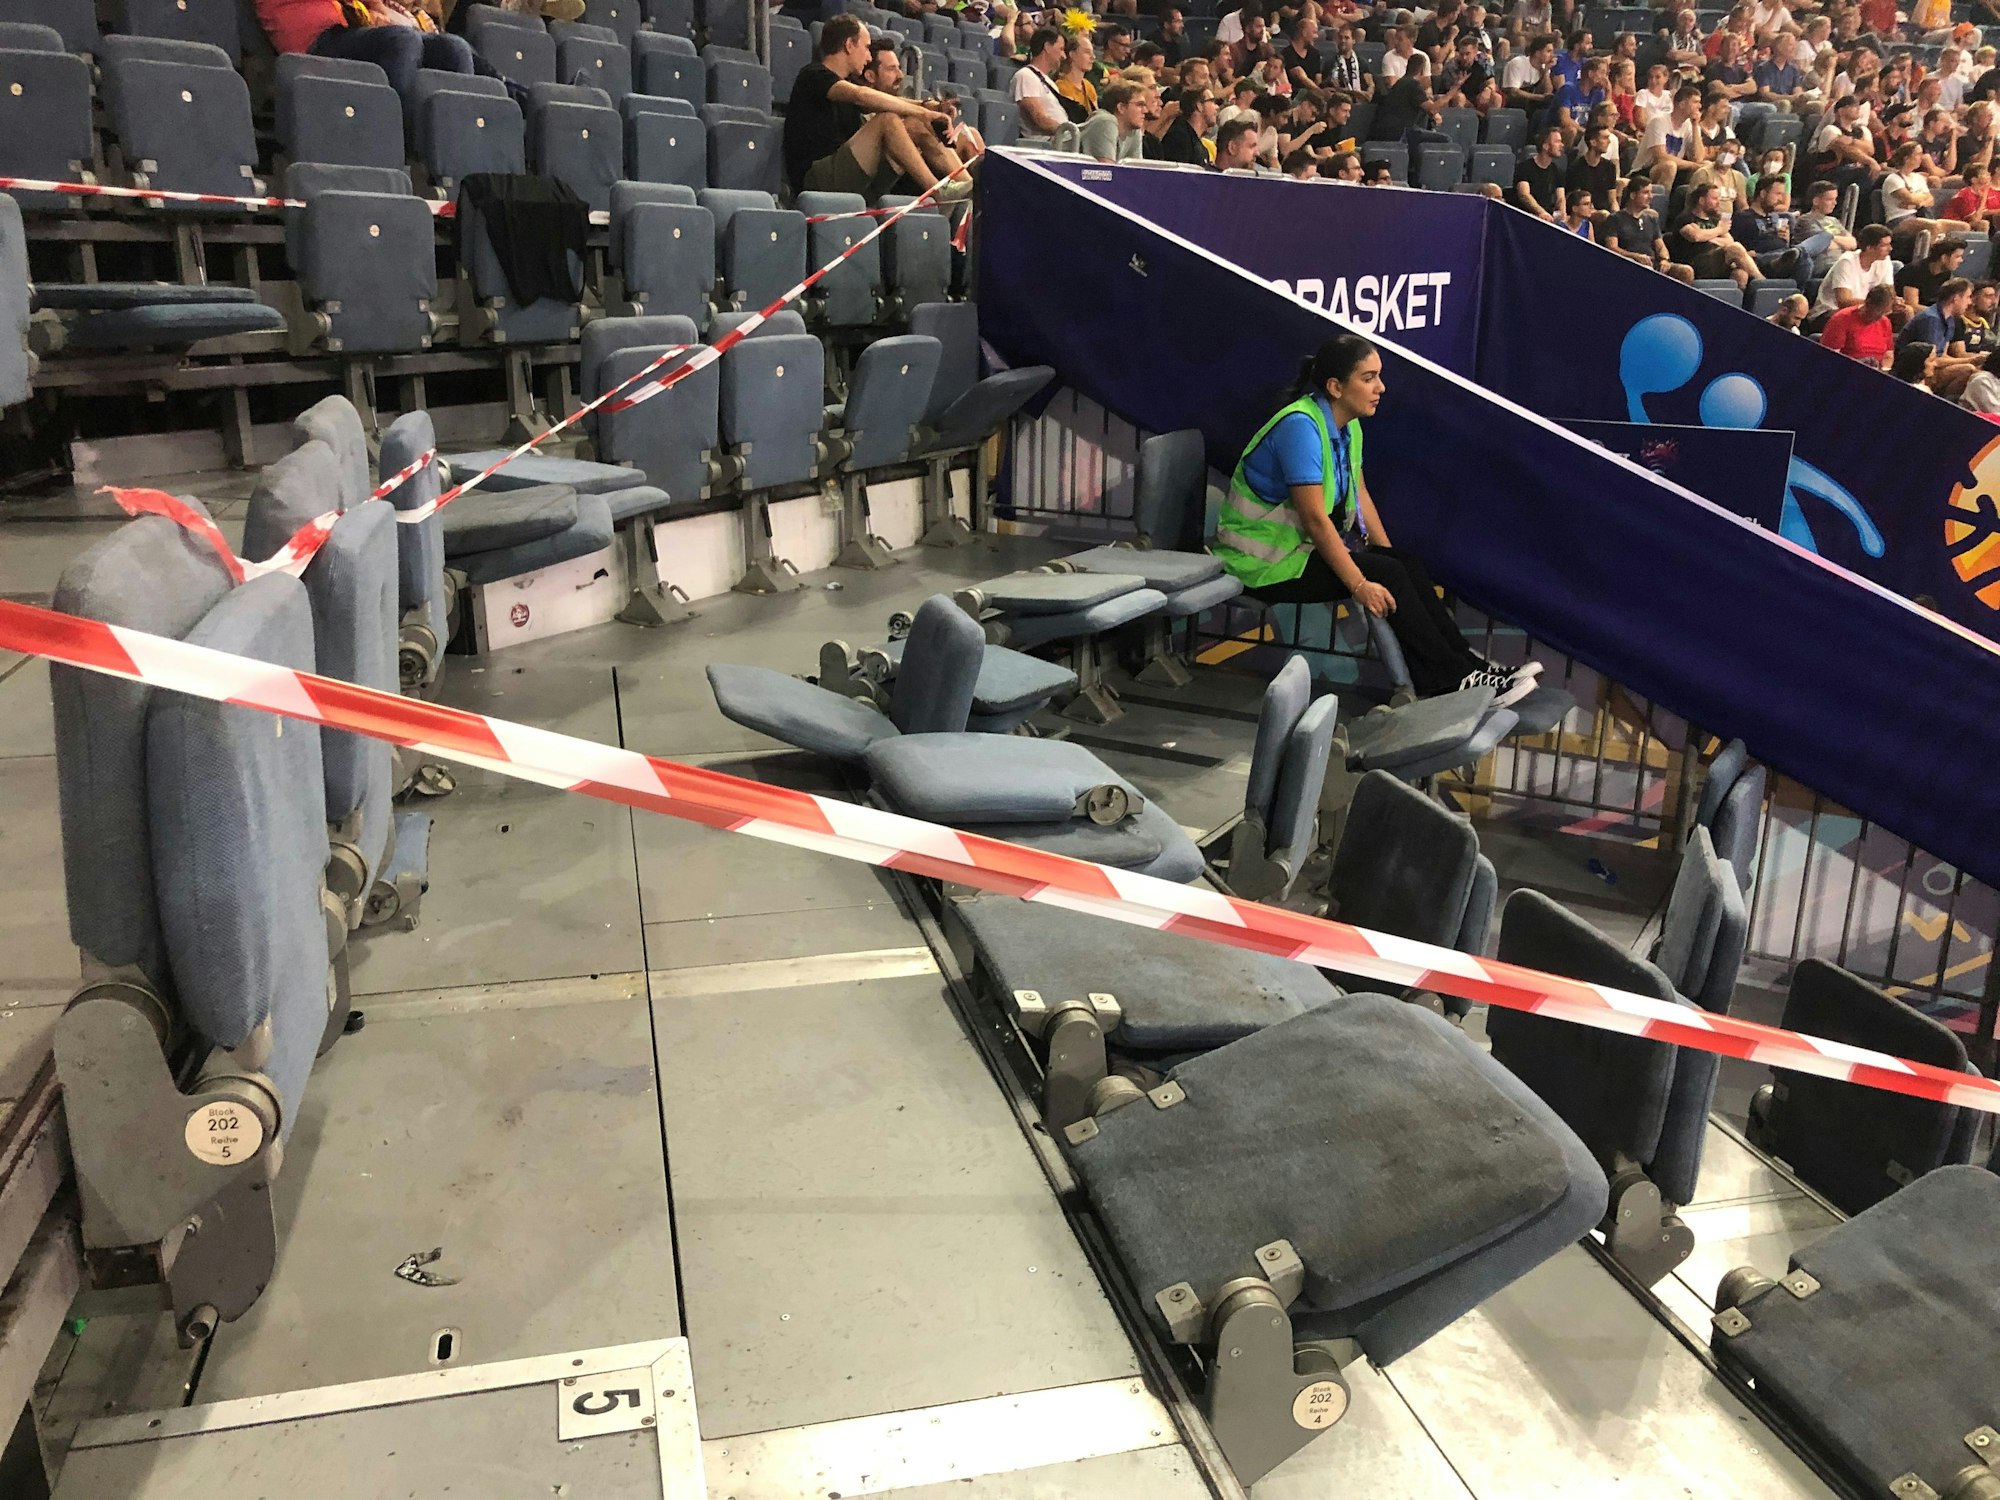 Bei der Basketball-EM in Köln wurde die Tribüne von Ultras aus Bosnien-Herzegowina zerstört.